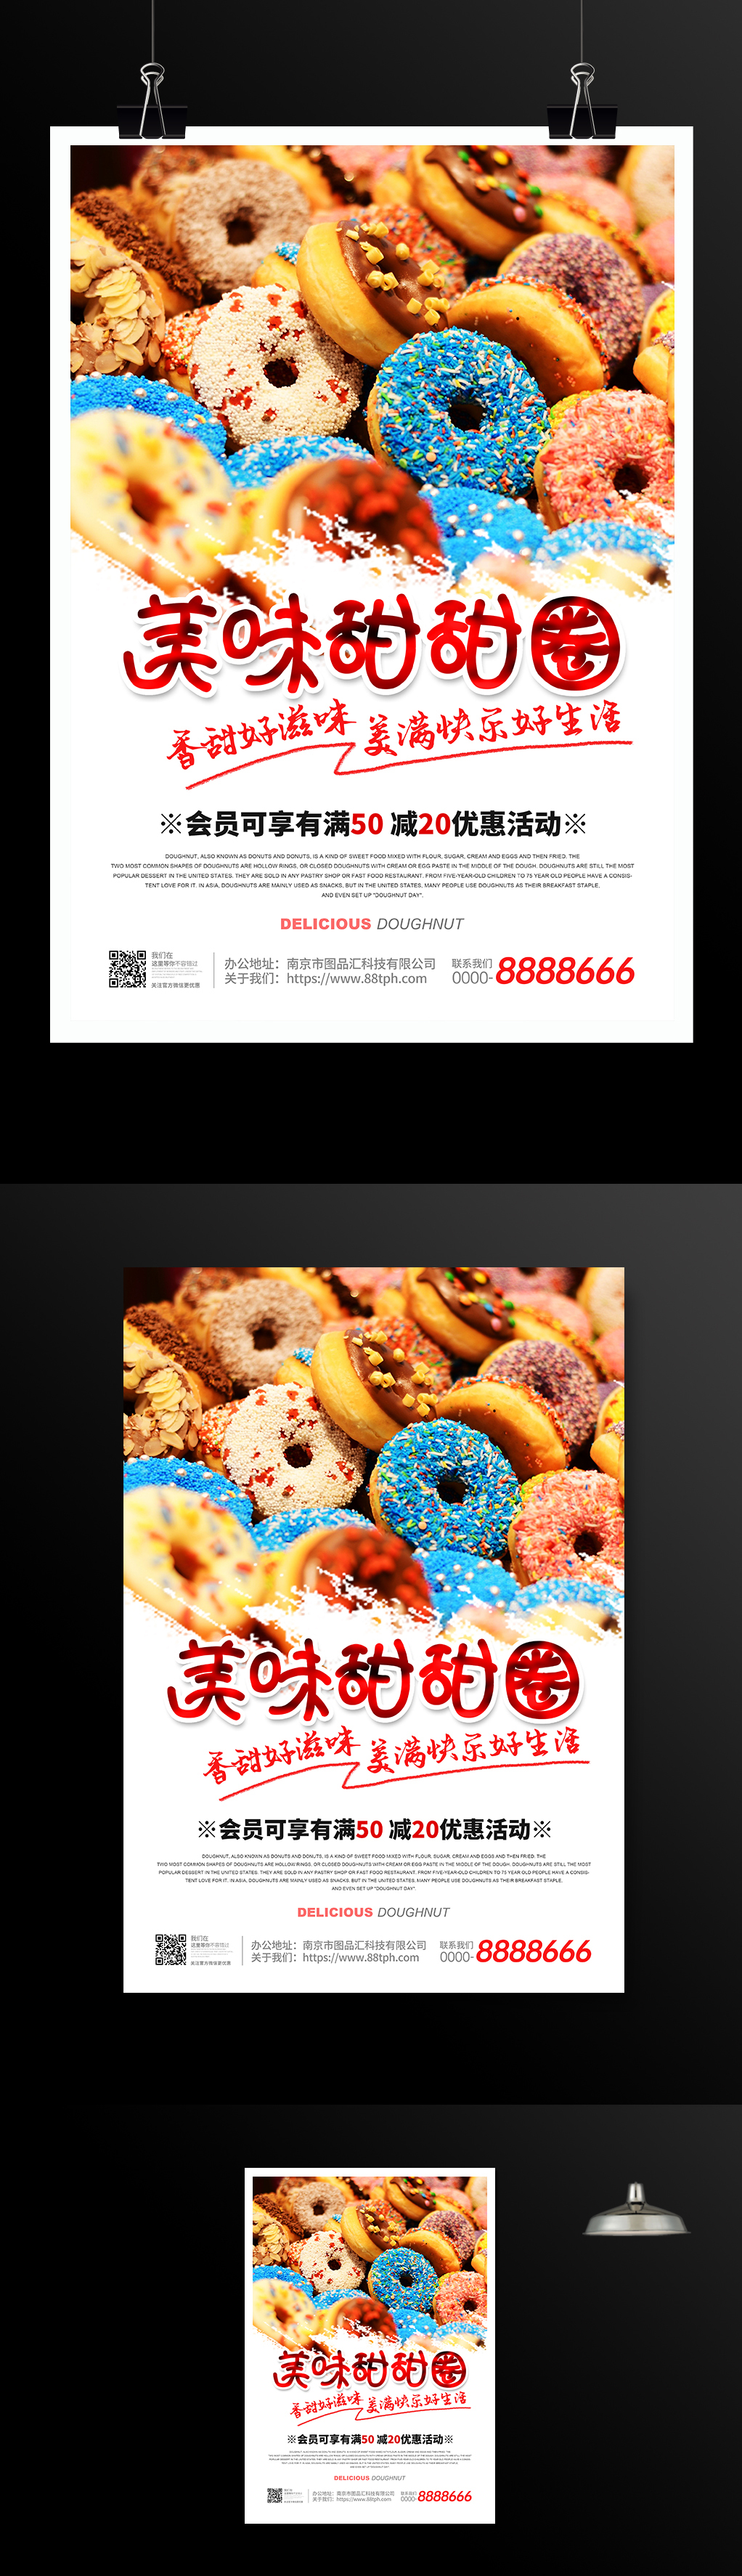 甜甜圈活动宣传海报